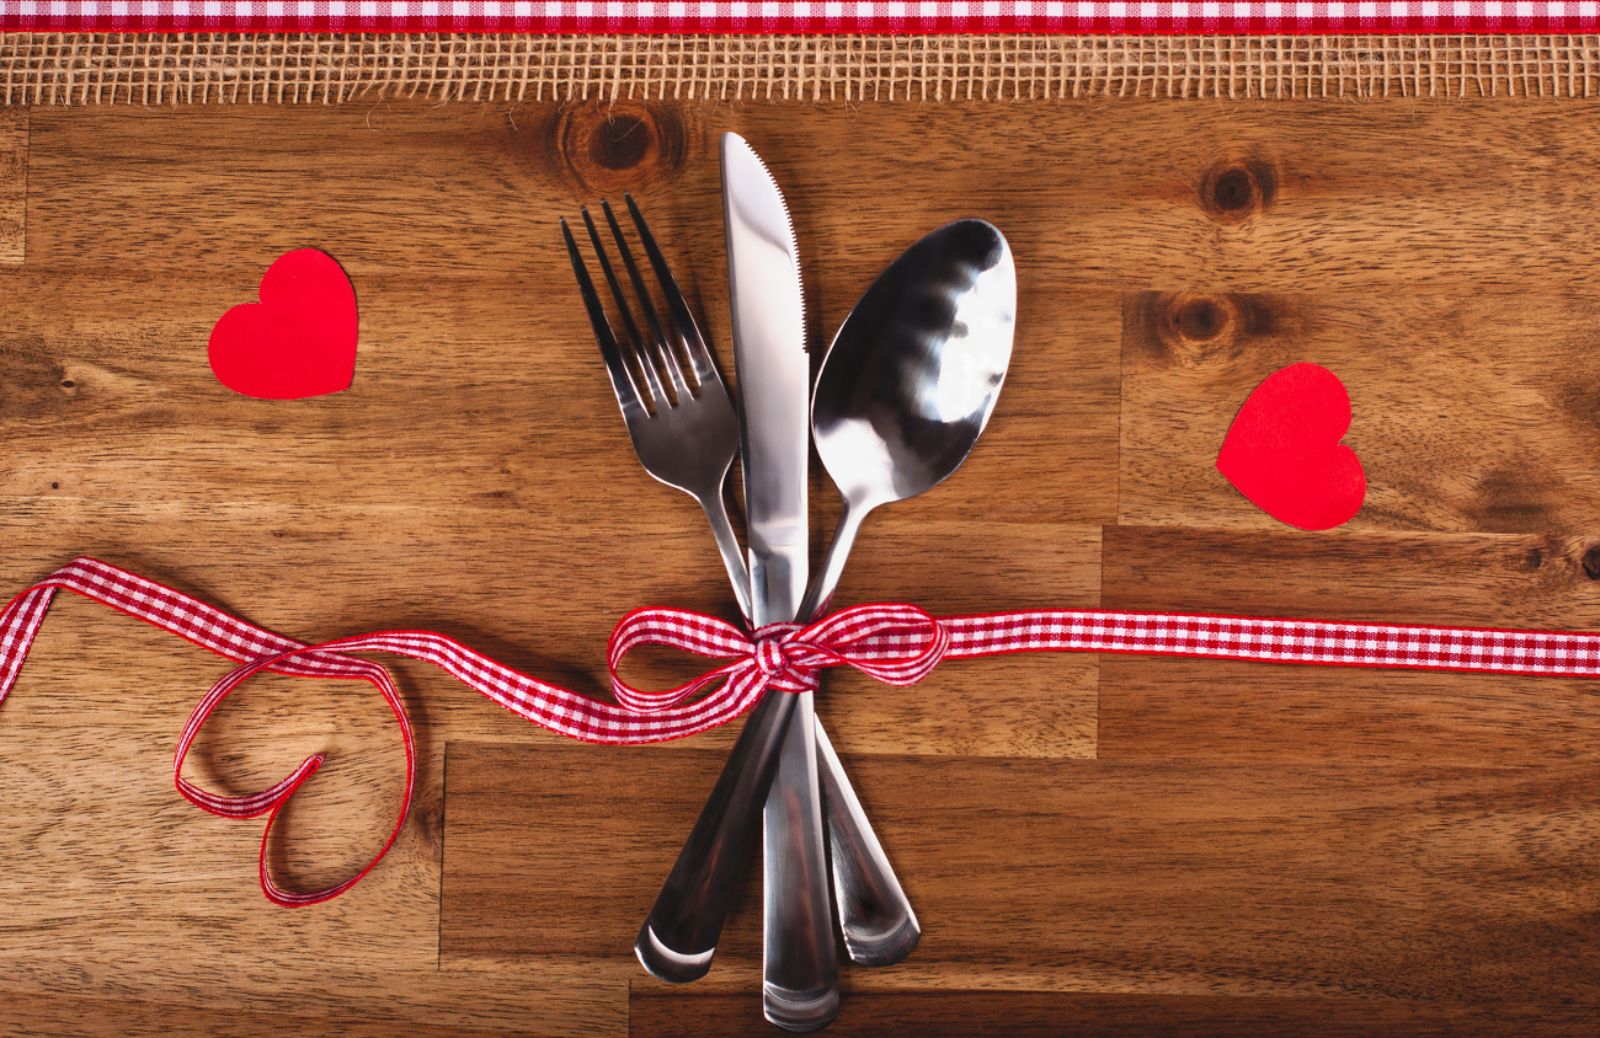 Come festeggiare San Valentino a tavola con i consigli del nutrizionista